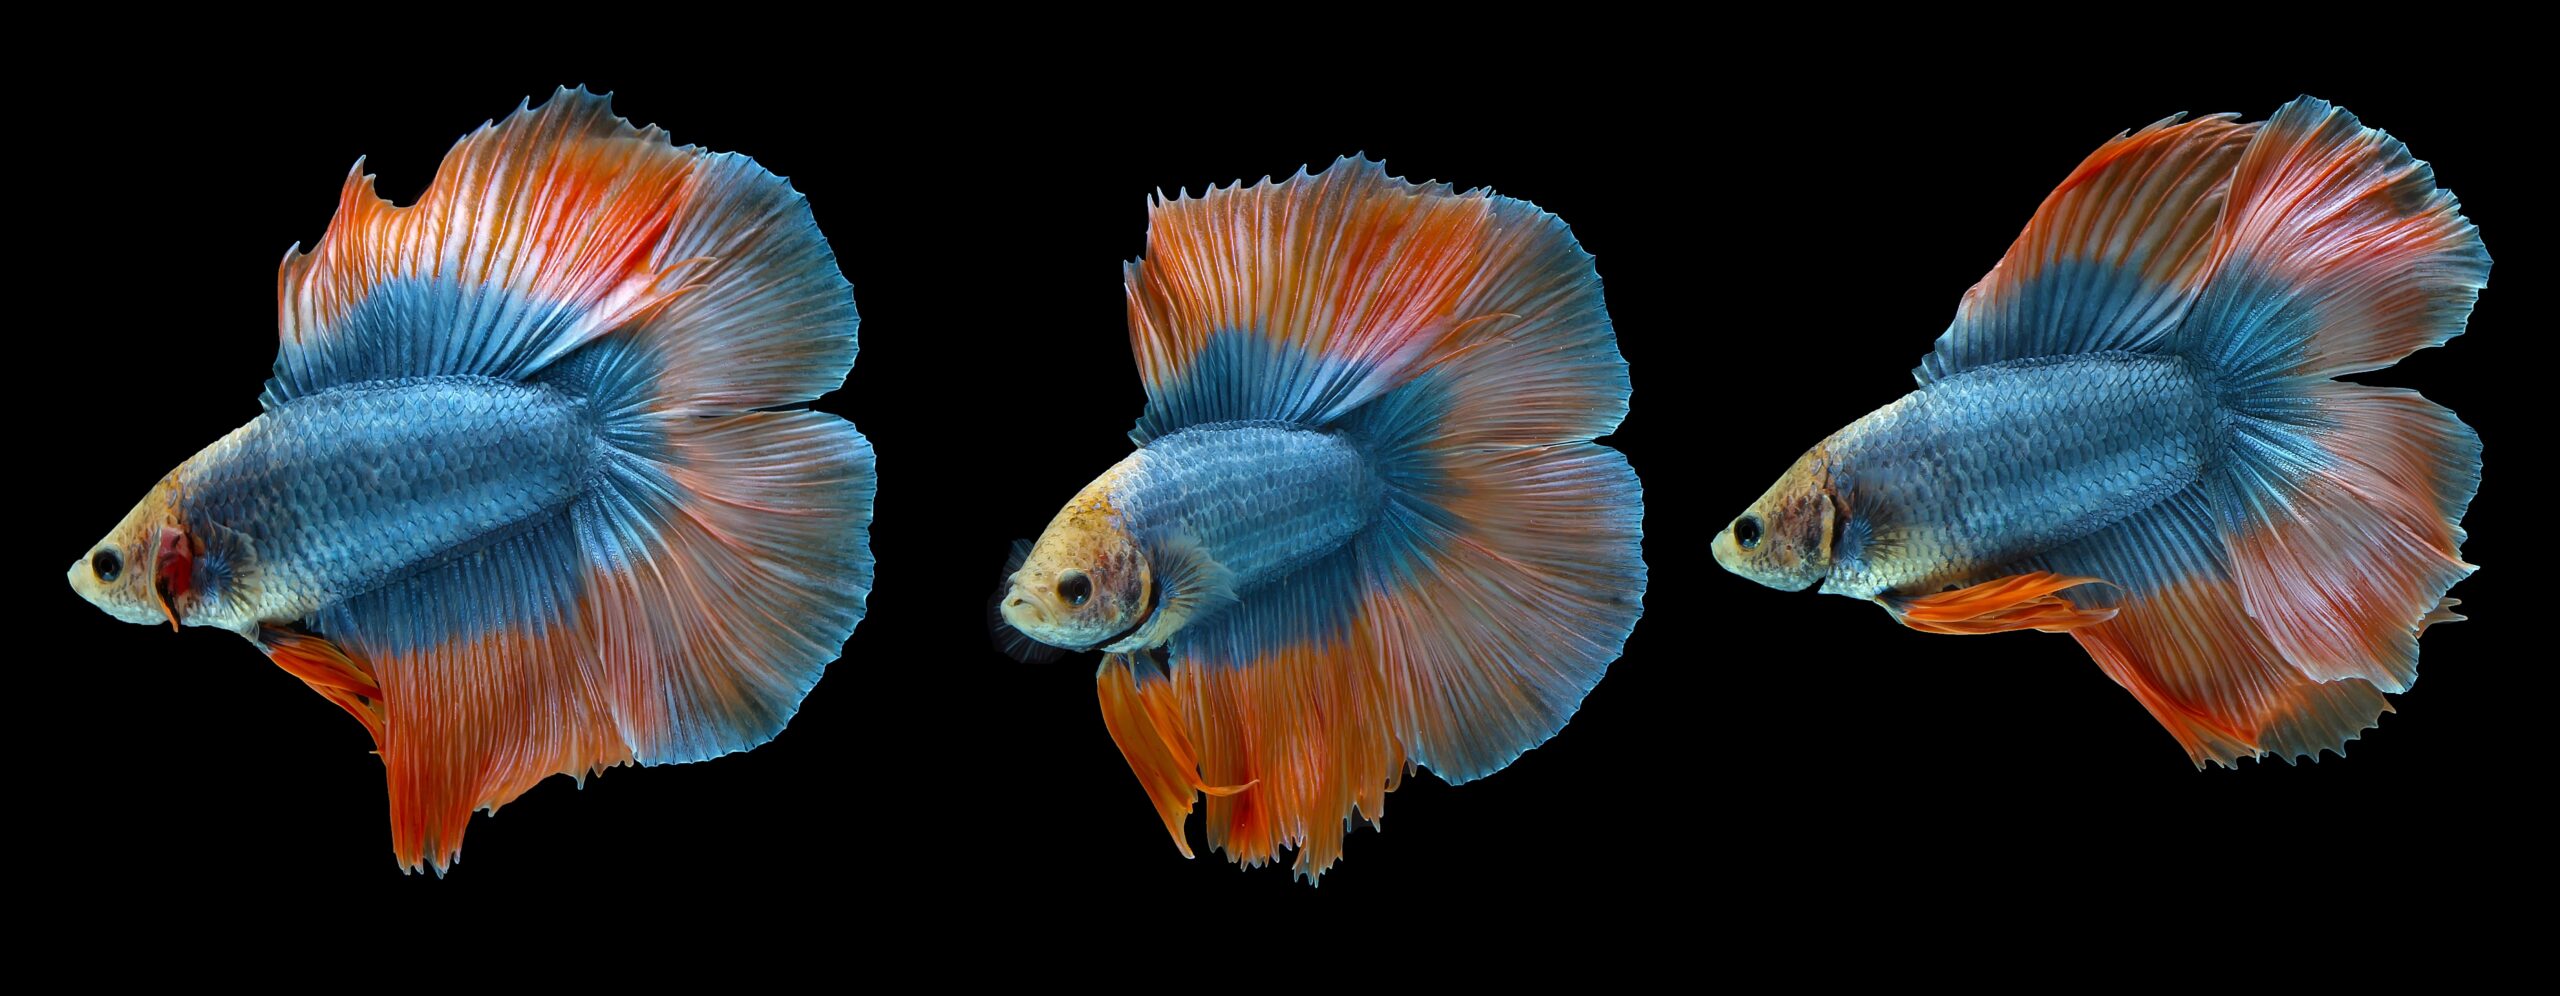 Diferentes variedades de caudas do peixe Betta